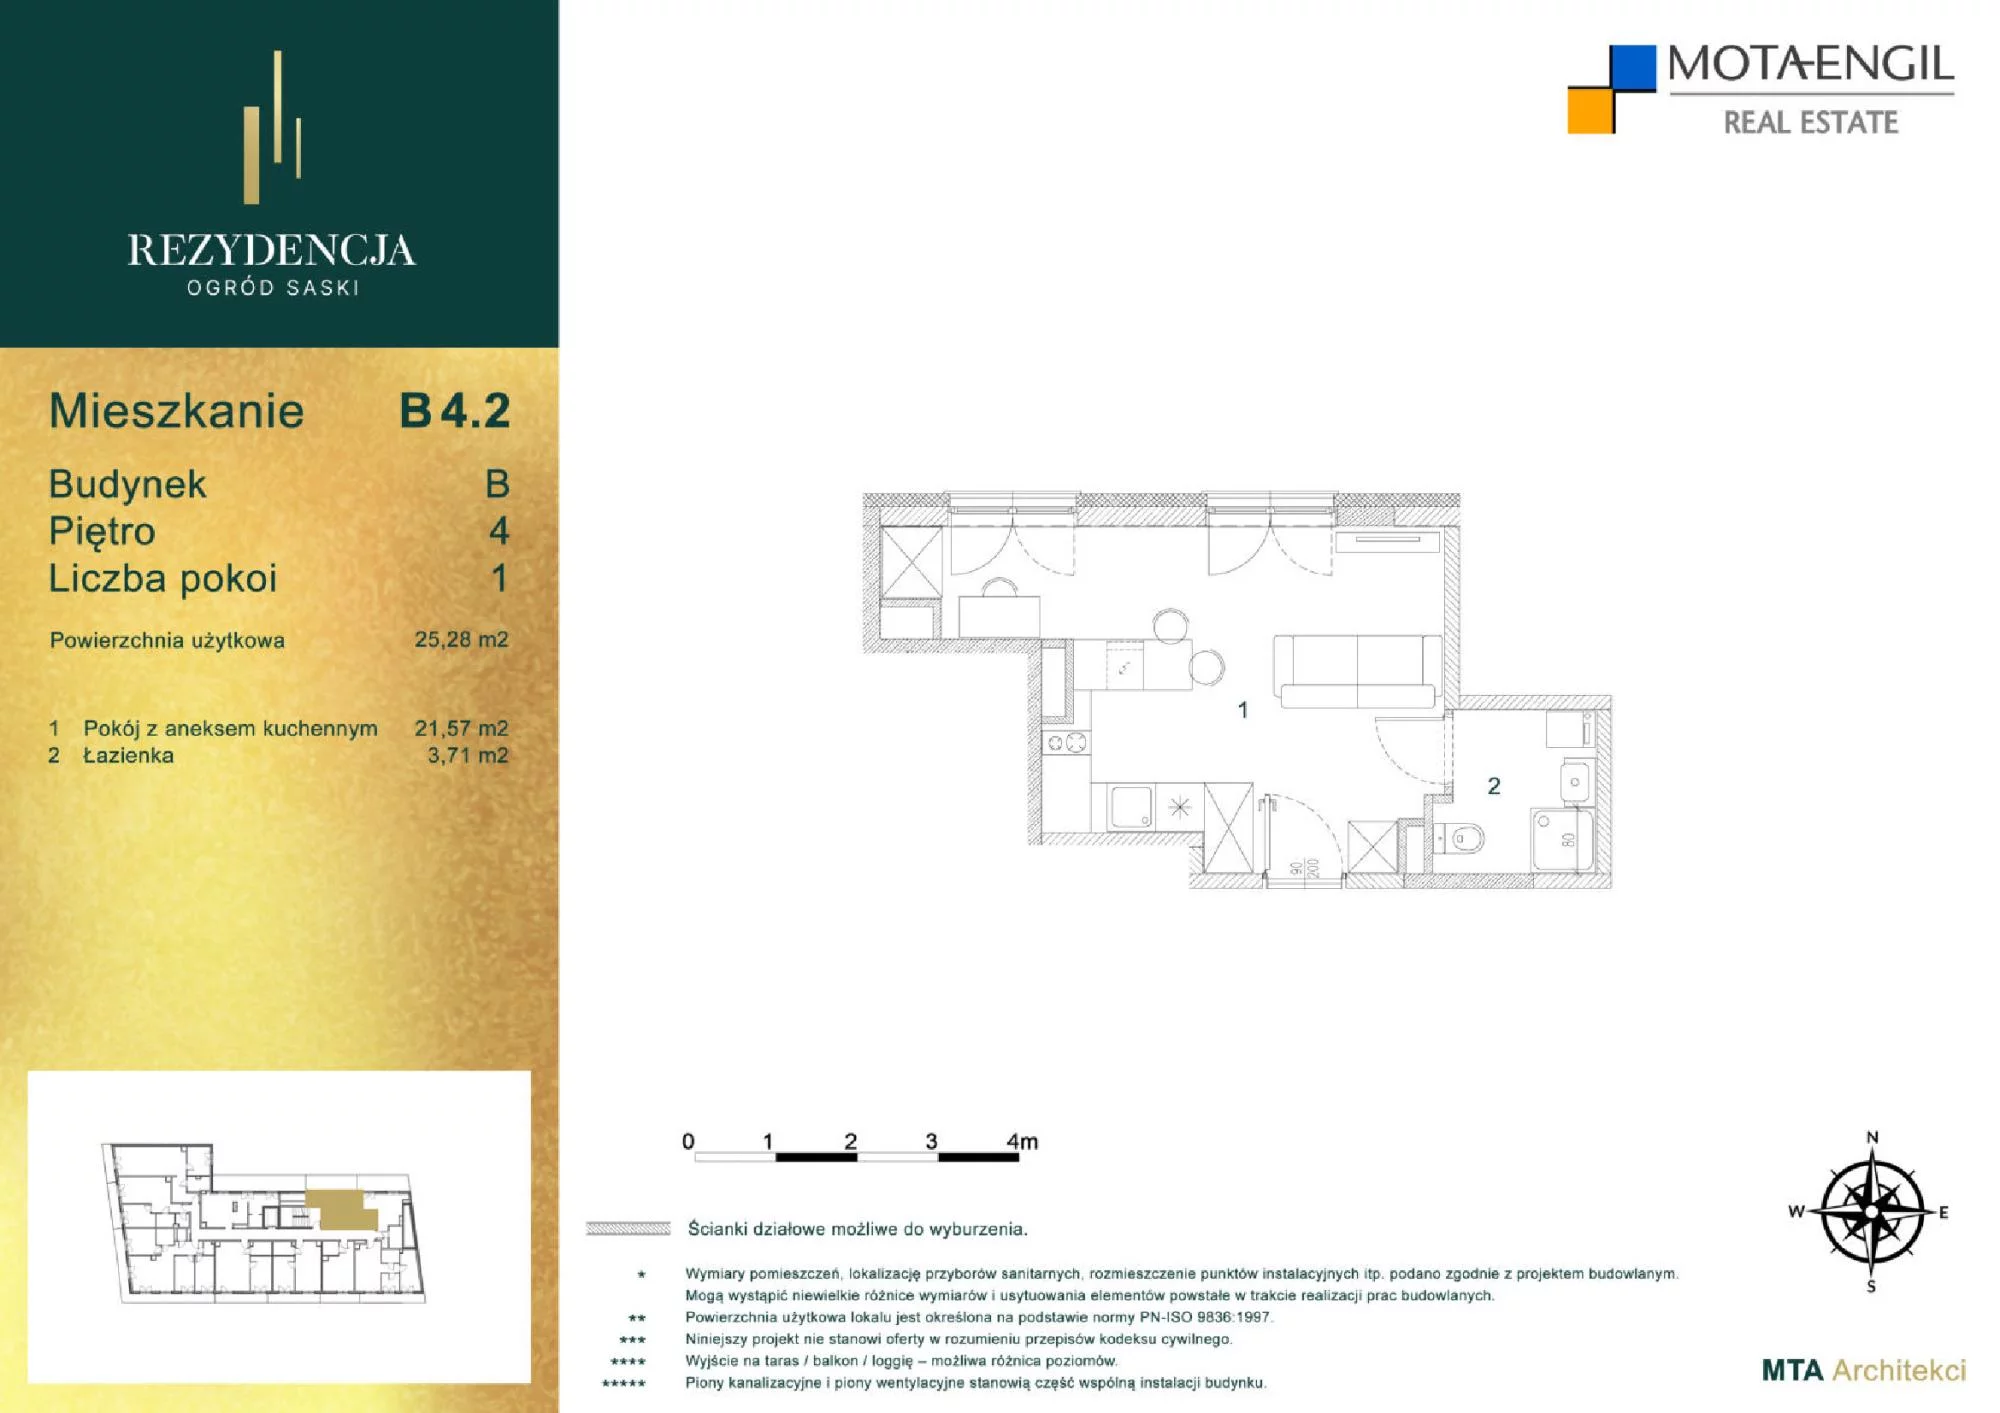 Mieszkanie 25,28 m², piętro 4, oferta nr B4.2, Rezydencja Ogród Saski, Lublin, Wieniawa, ul. Jasna 7, 7A